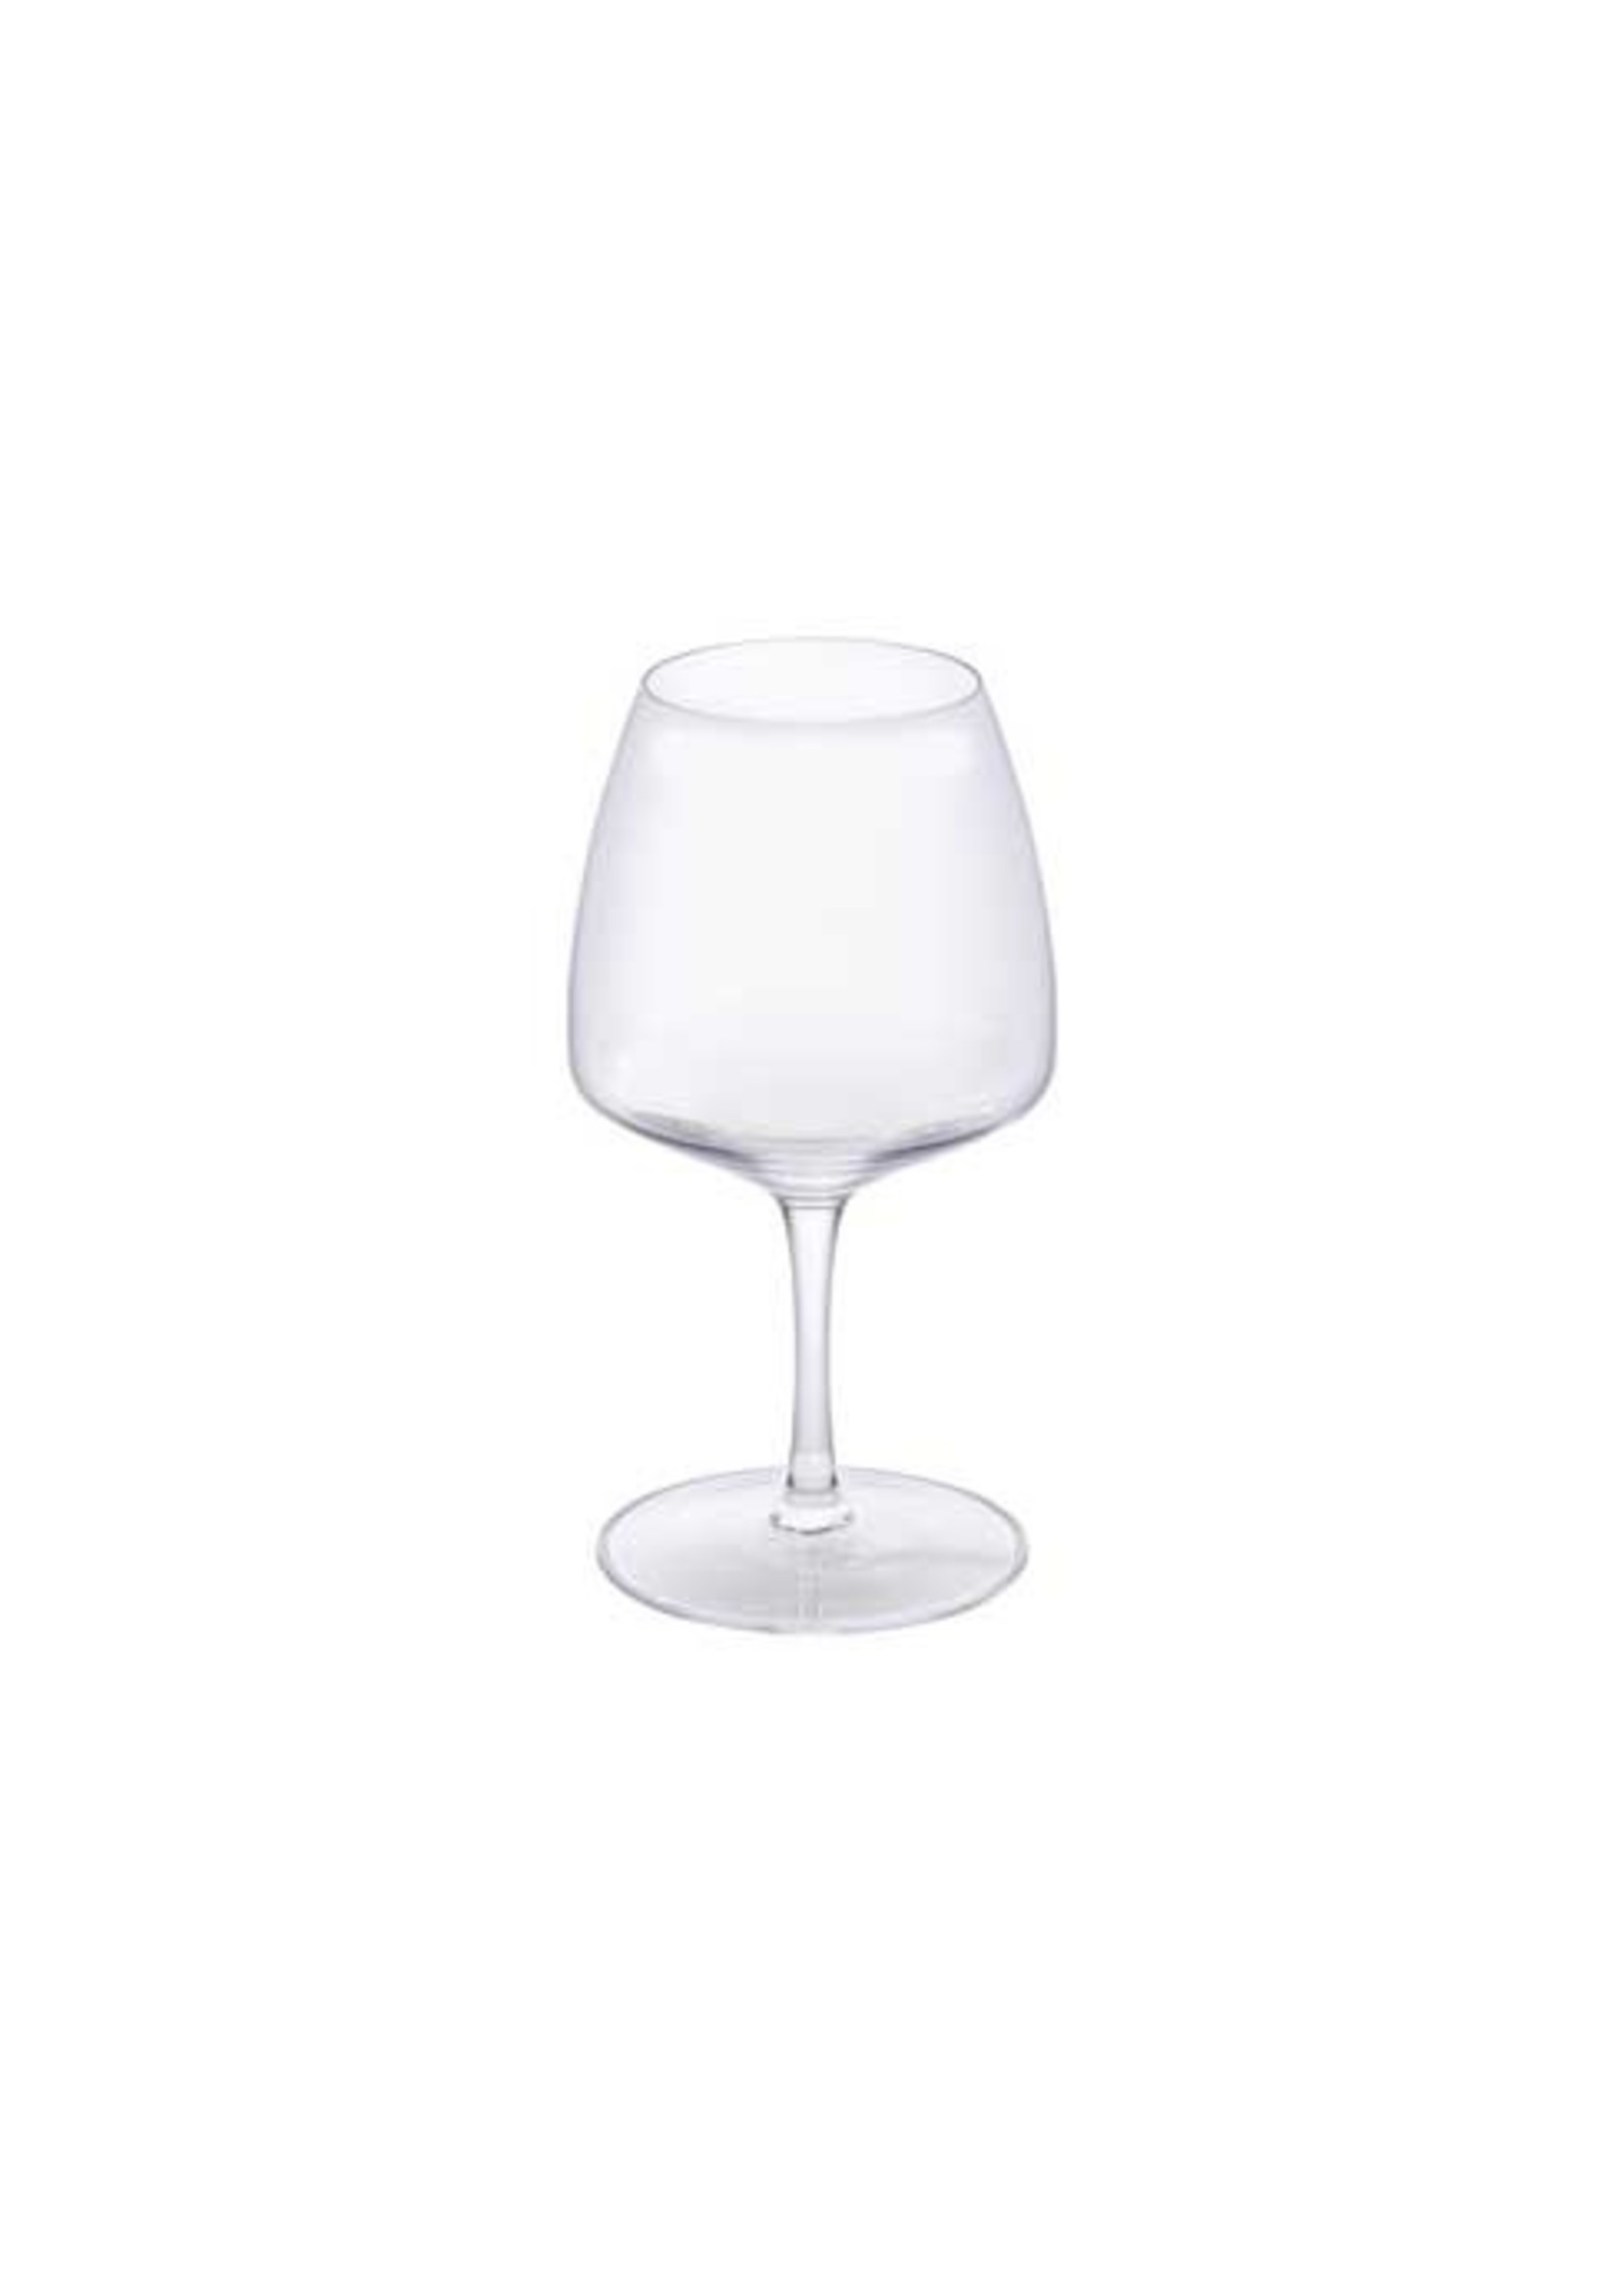 CASAFINA LIVING VITE CHARDONAY WHITE GLASS